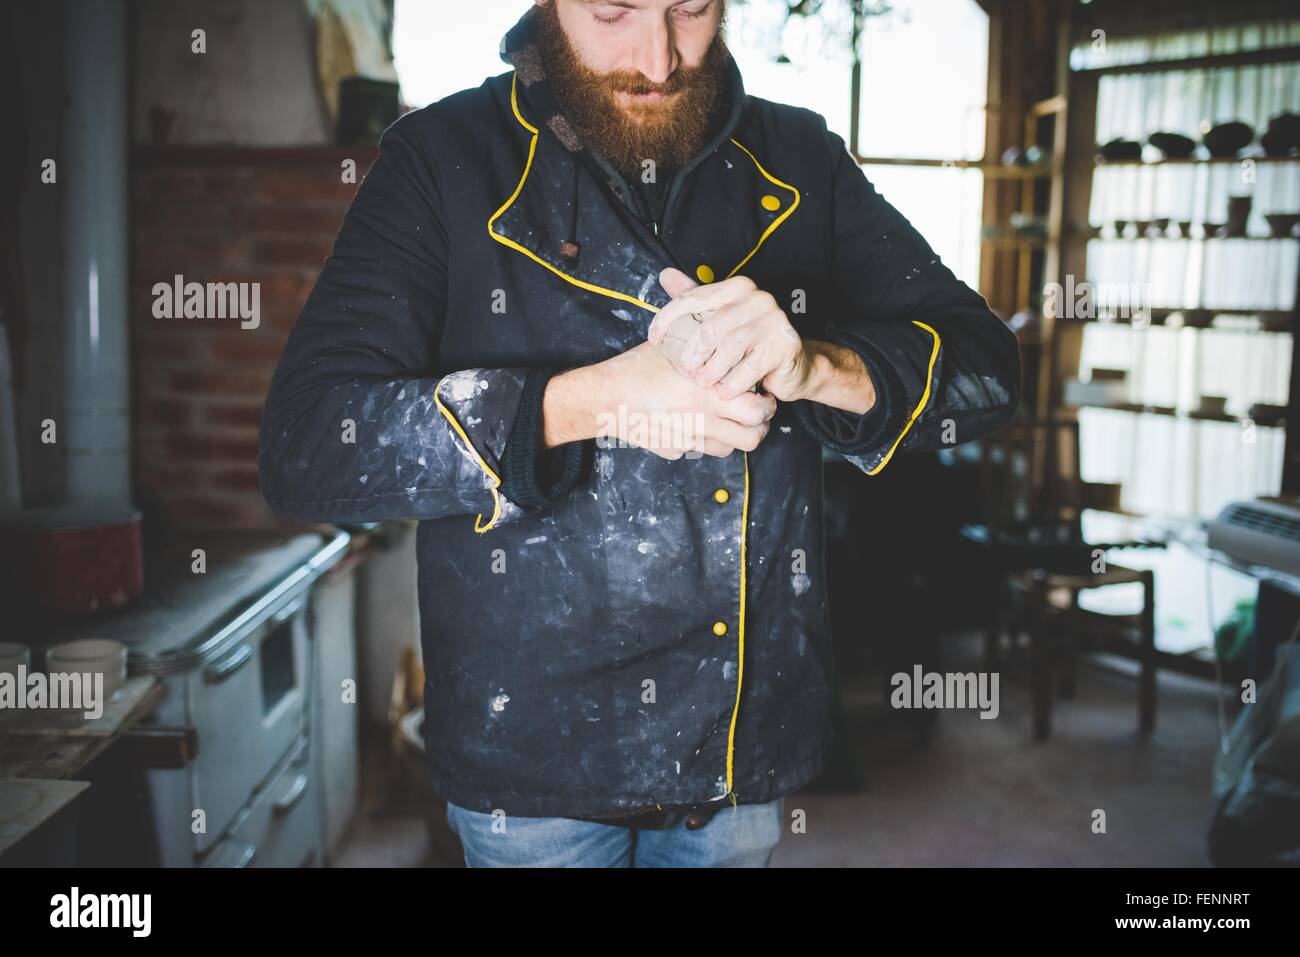 Barbuto metà uomo adulto spremitura di argilla nelle mani, guardando verso il basso Foto Stock